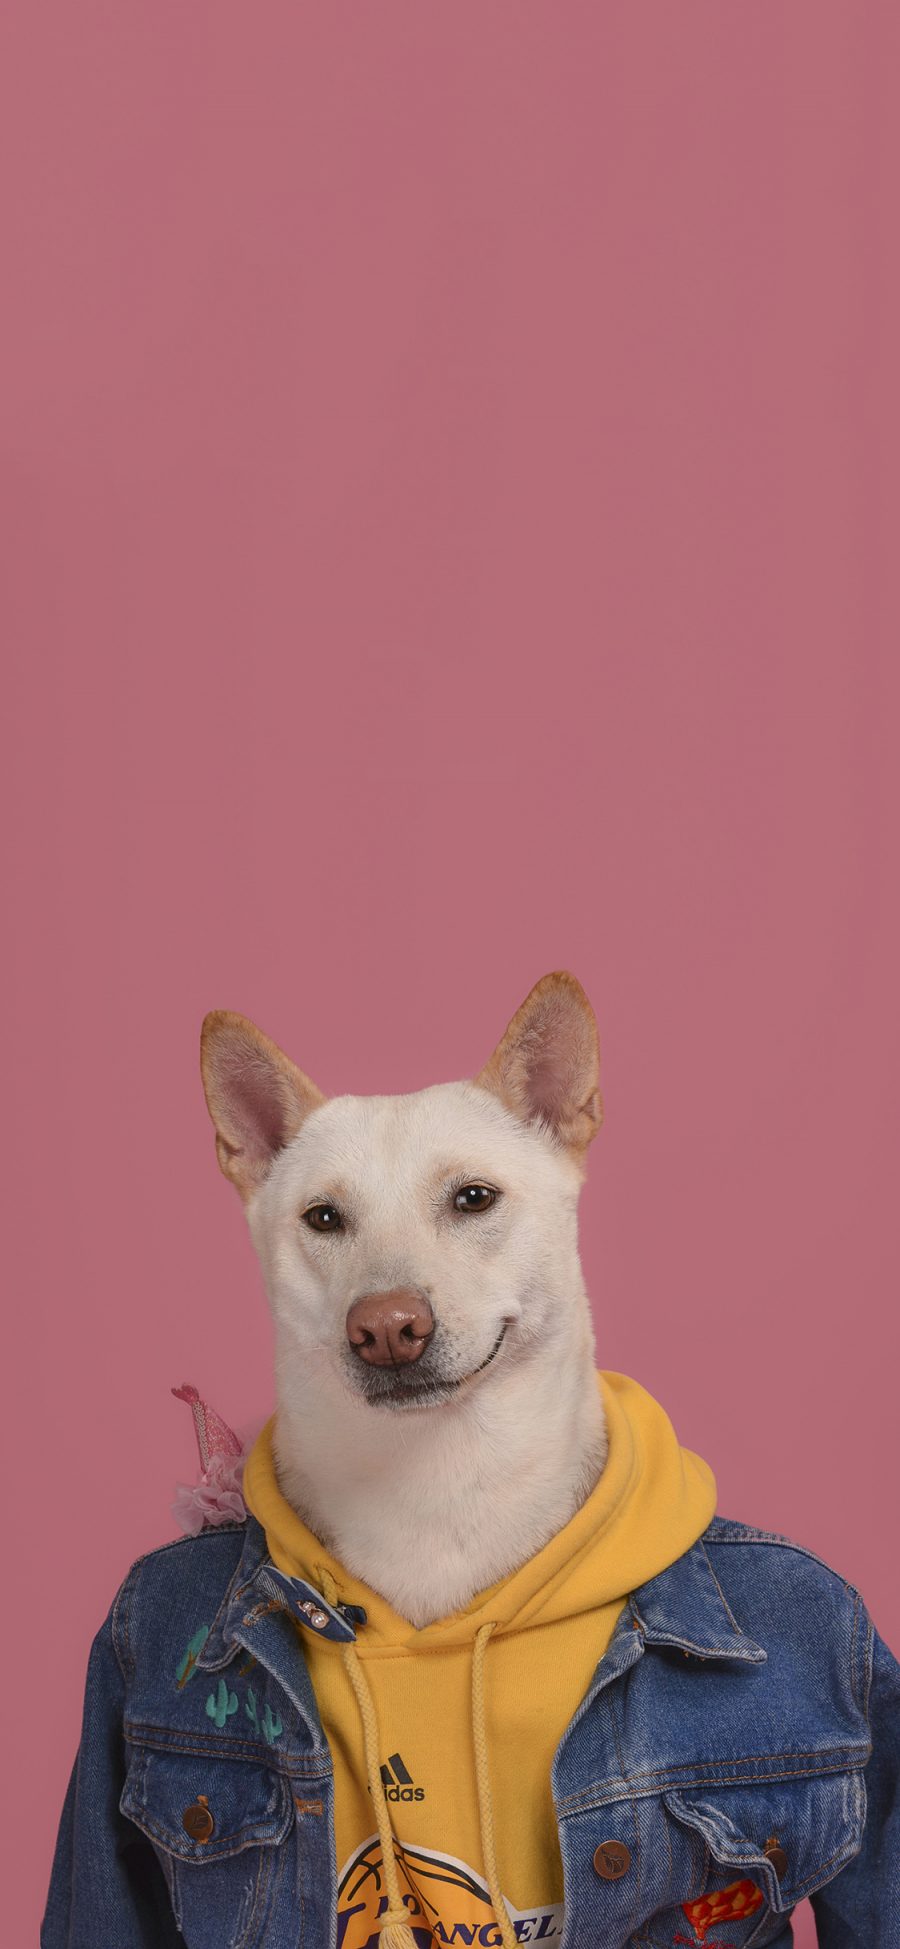 [2436×1125]萌宠 宠物狗 写真 衣服 创意 苹果手机壁纸图片